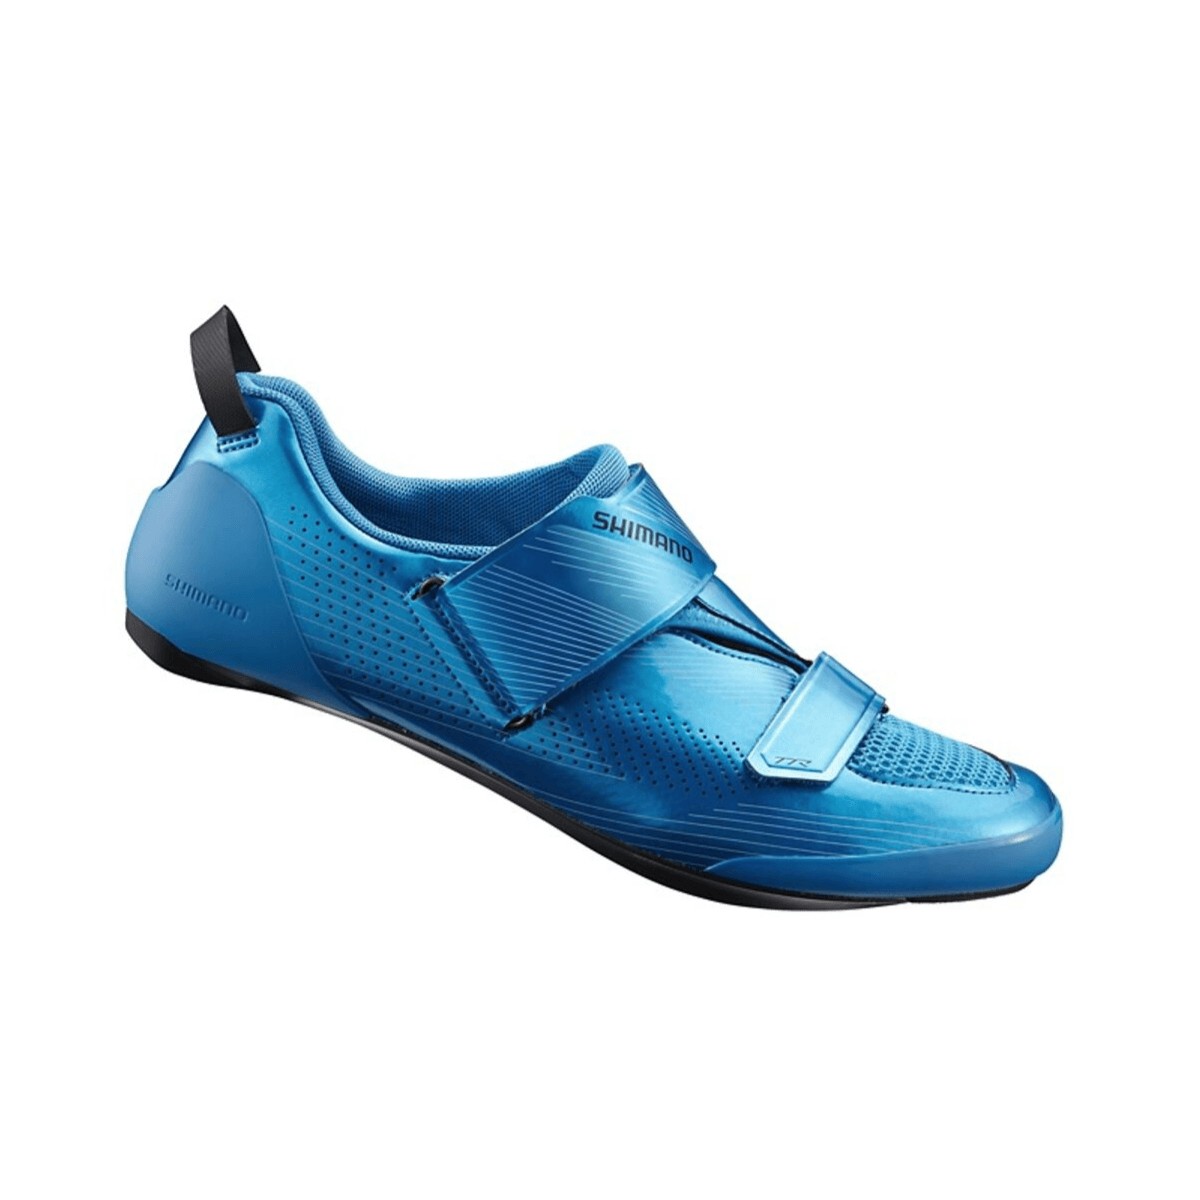 Shimano TR9 Men's Triathlon Shoes Blue with Carbon Fibre Sole, Size 44,5 - EUR